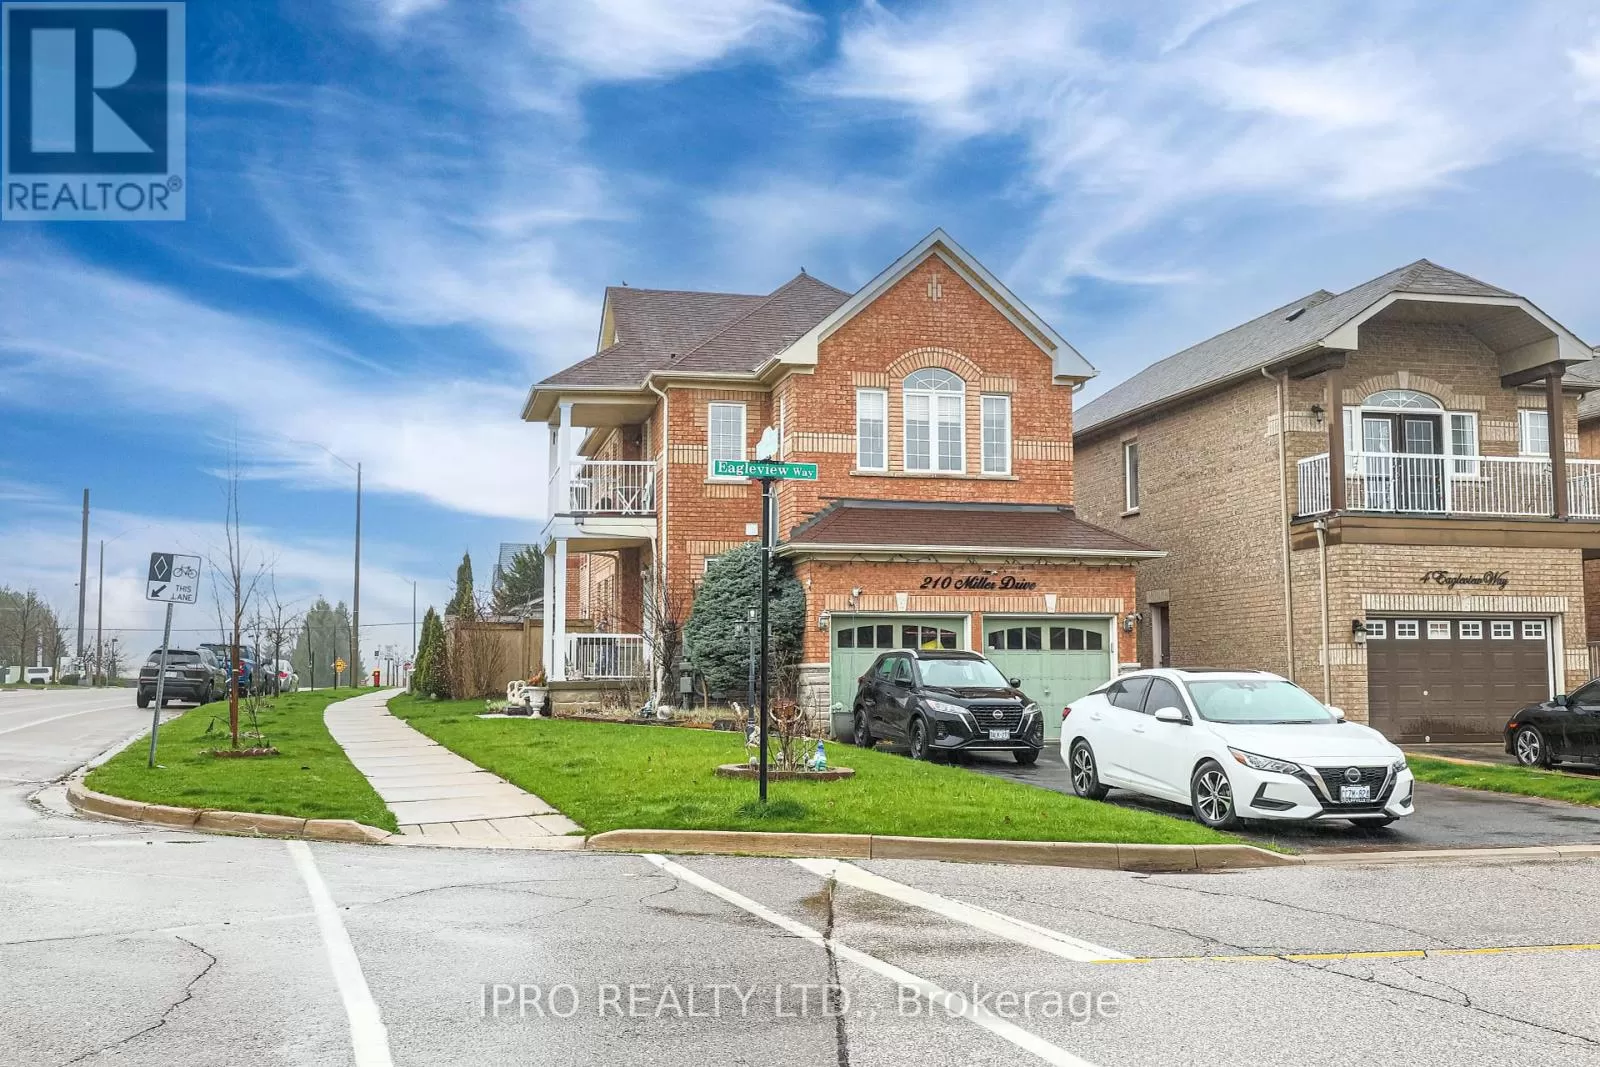 House for rent: 210 Miller Dr, Halton Hills, Ontario L7G 6N3